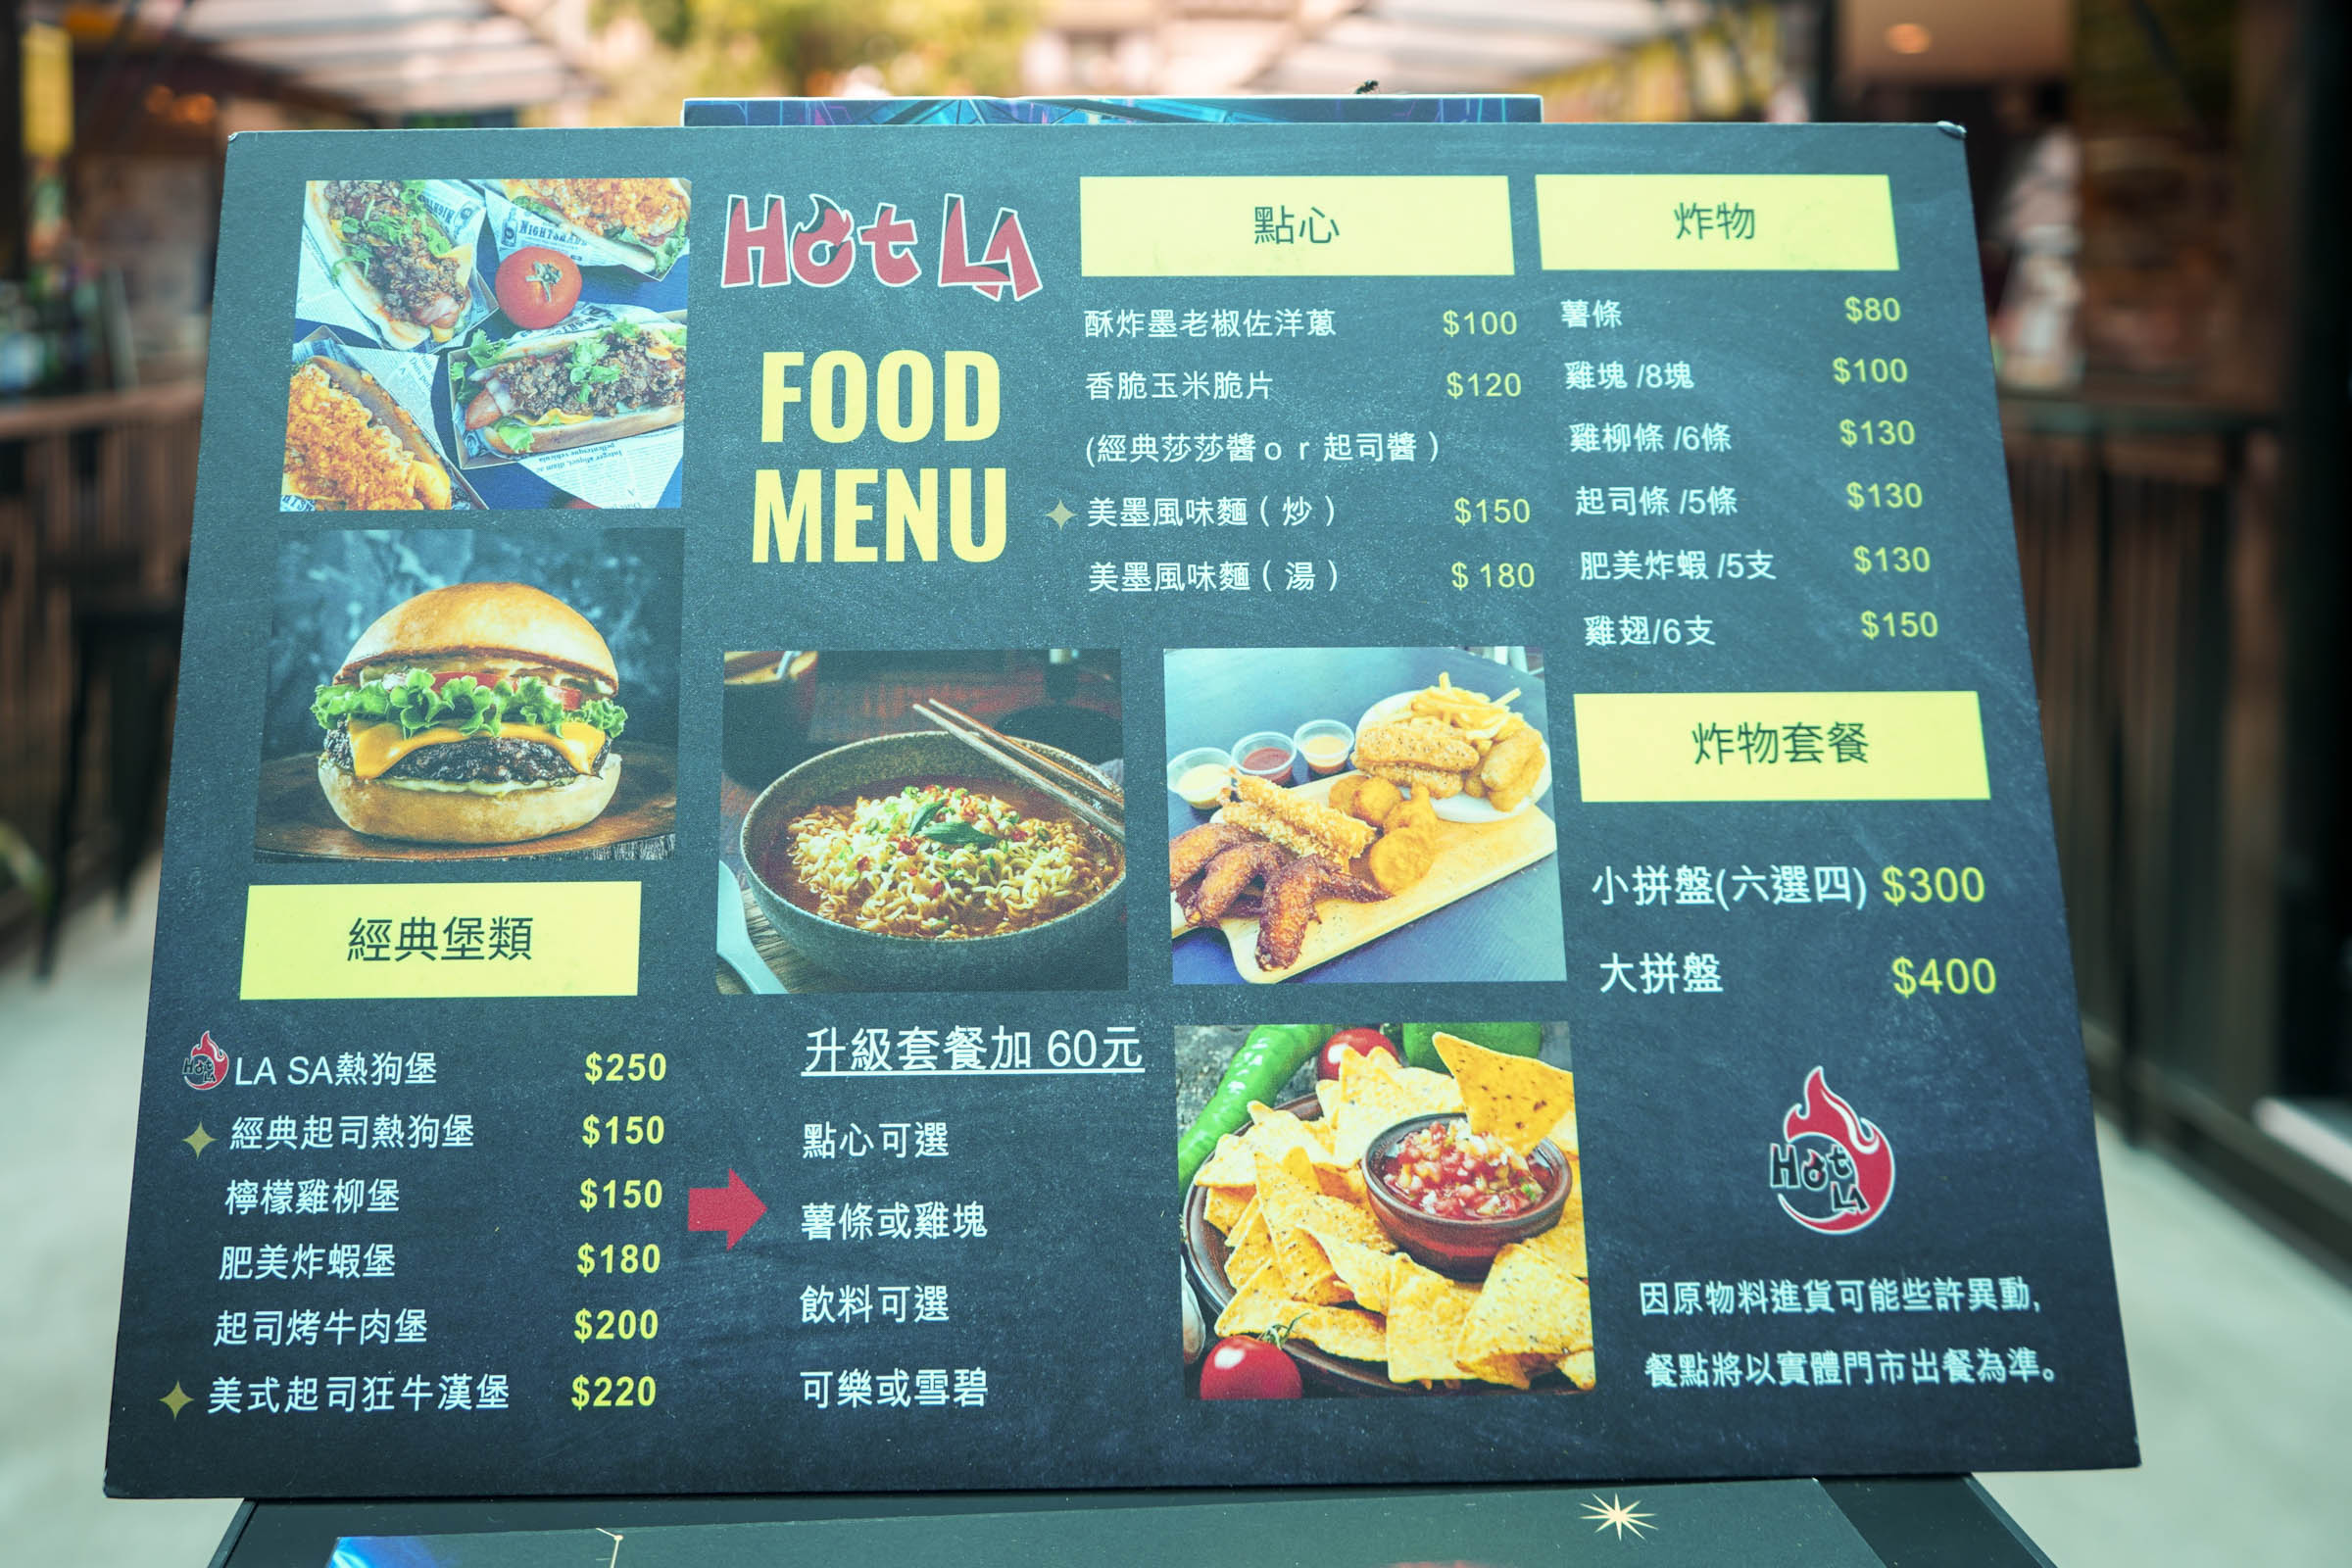 Hot LA Food 美墨餐酒吧(R8店)